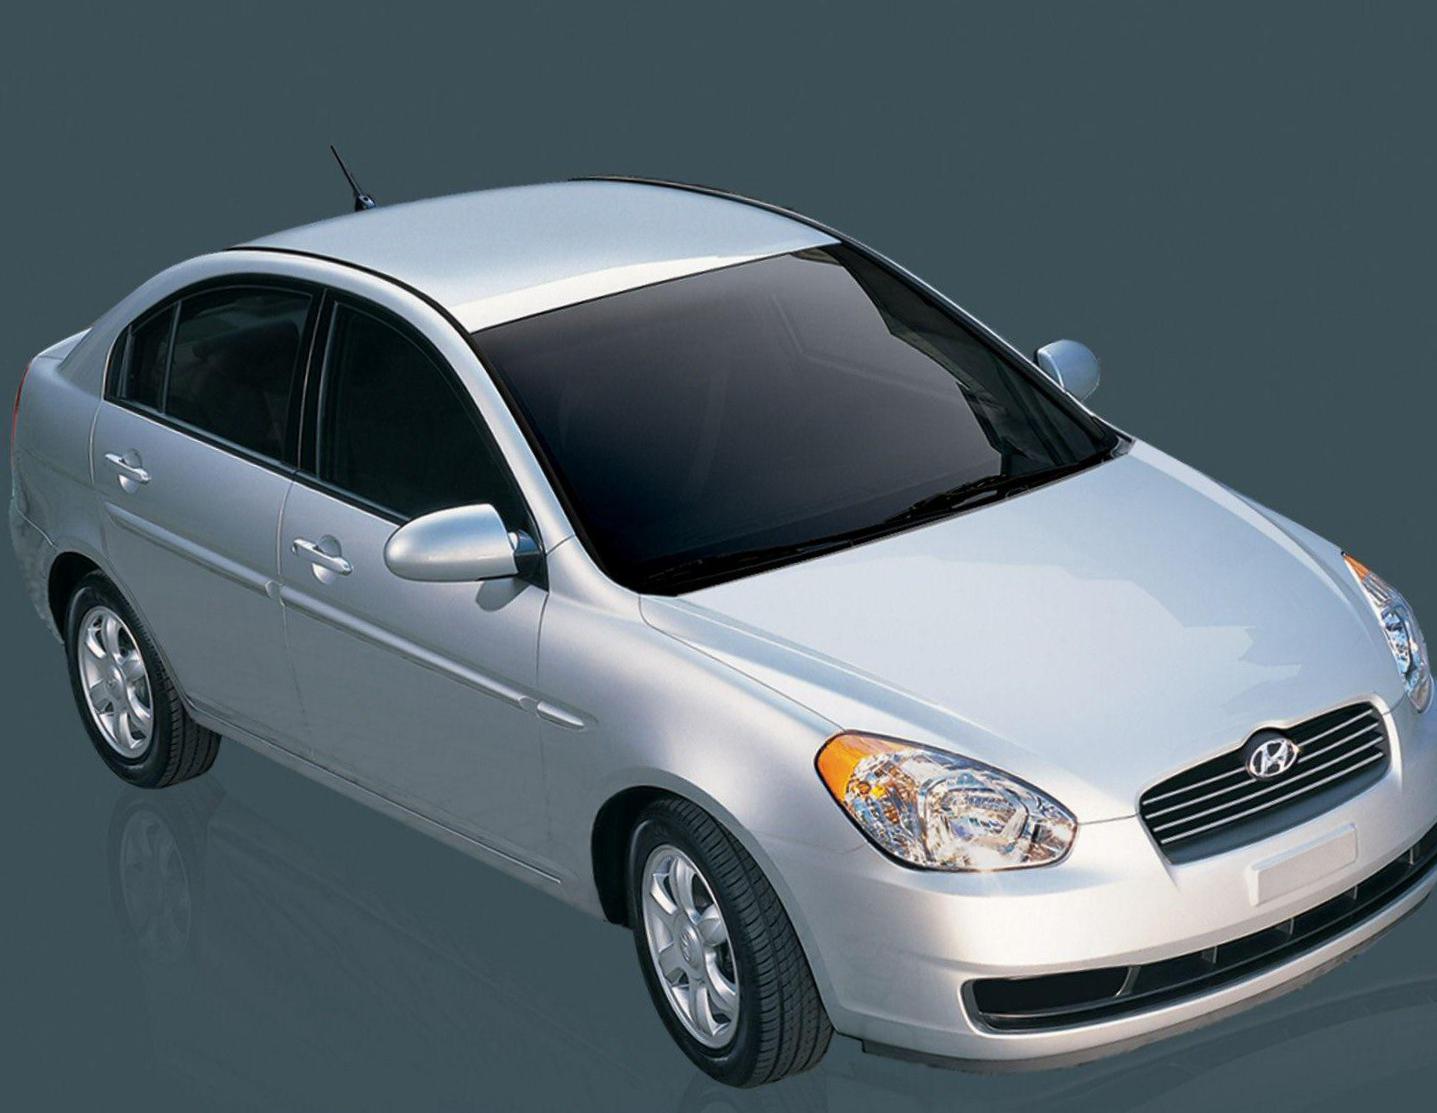 Accent Hyundai prices 2012